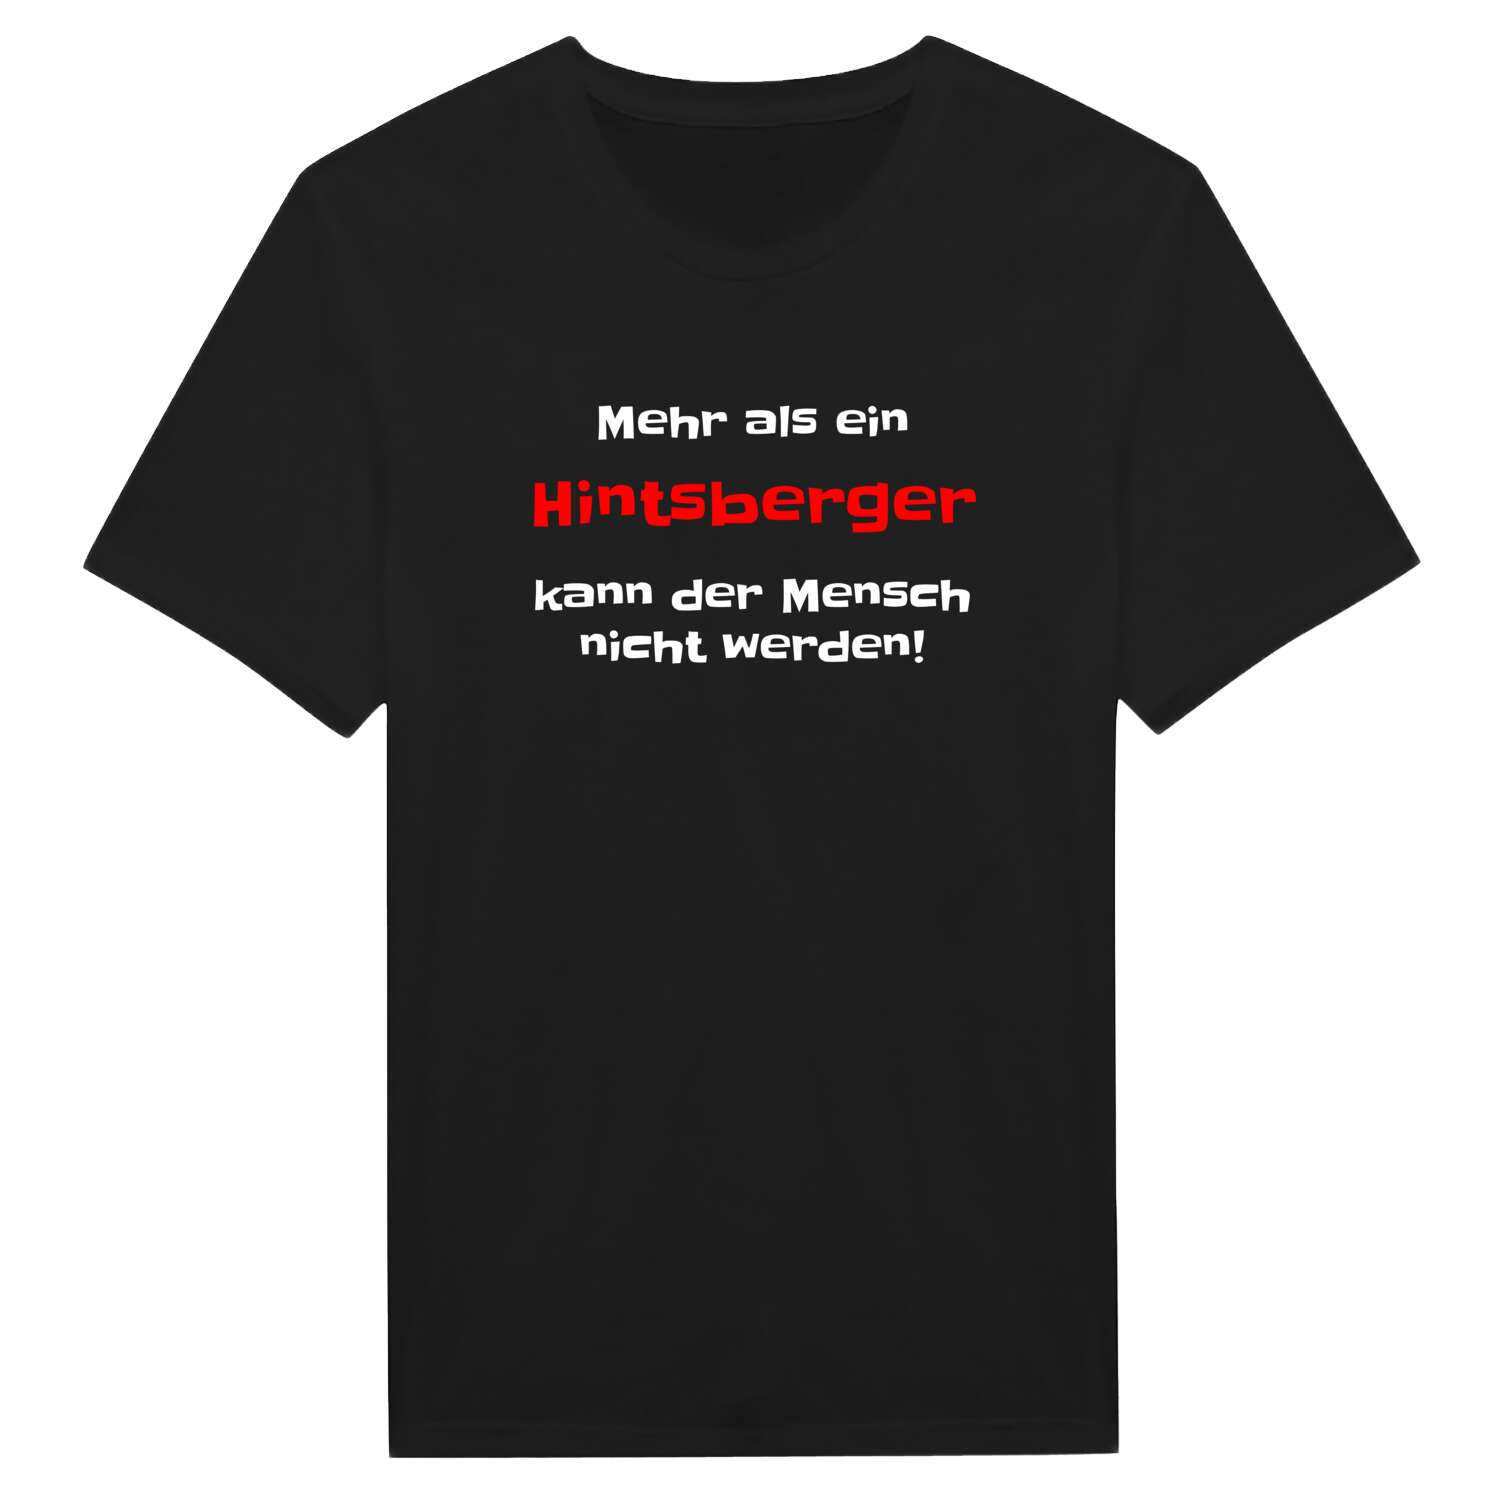 Hintsberg T-Shirt »Mehr als ein«